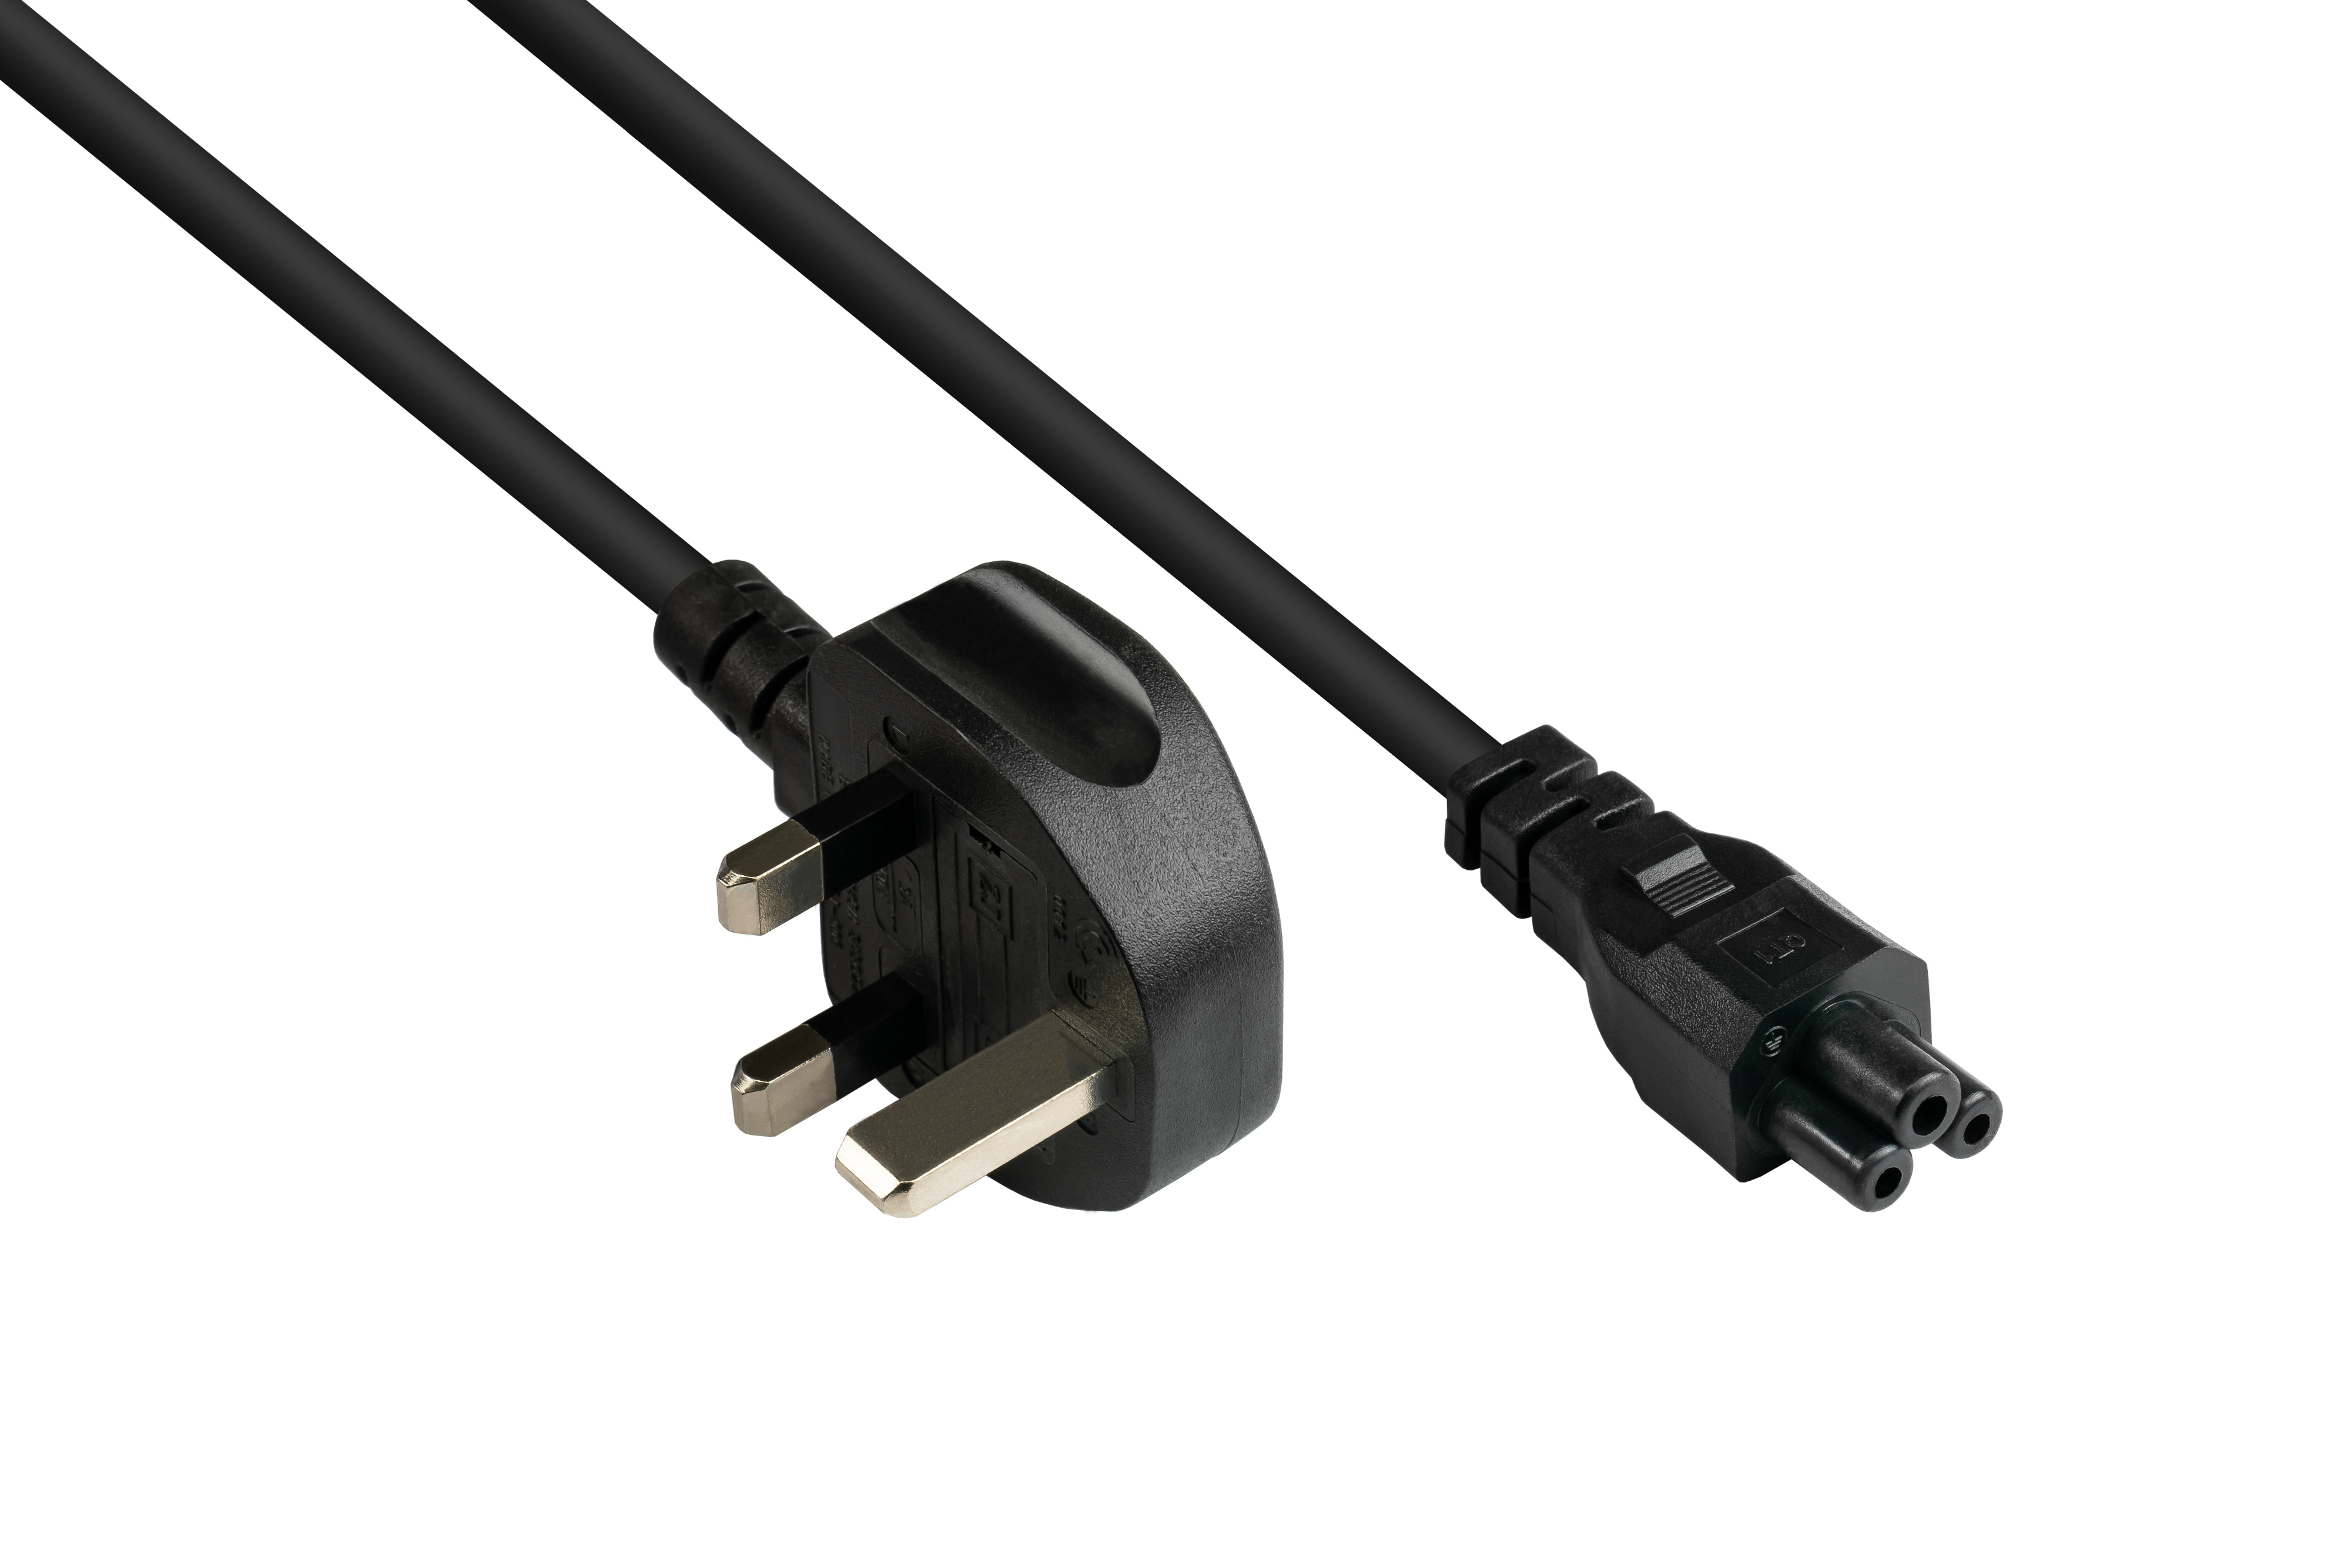 schwarz, CONNECTIONS (gerade) für G ASTA, 3A, Typ (BS 1363) England/UK GOOD mm² Netz-Stecker Stromkabel, an C5 0,75 Notebook, schwarz